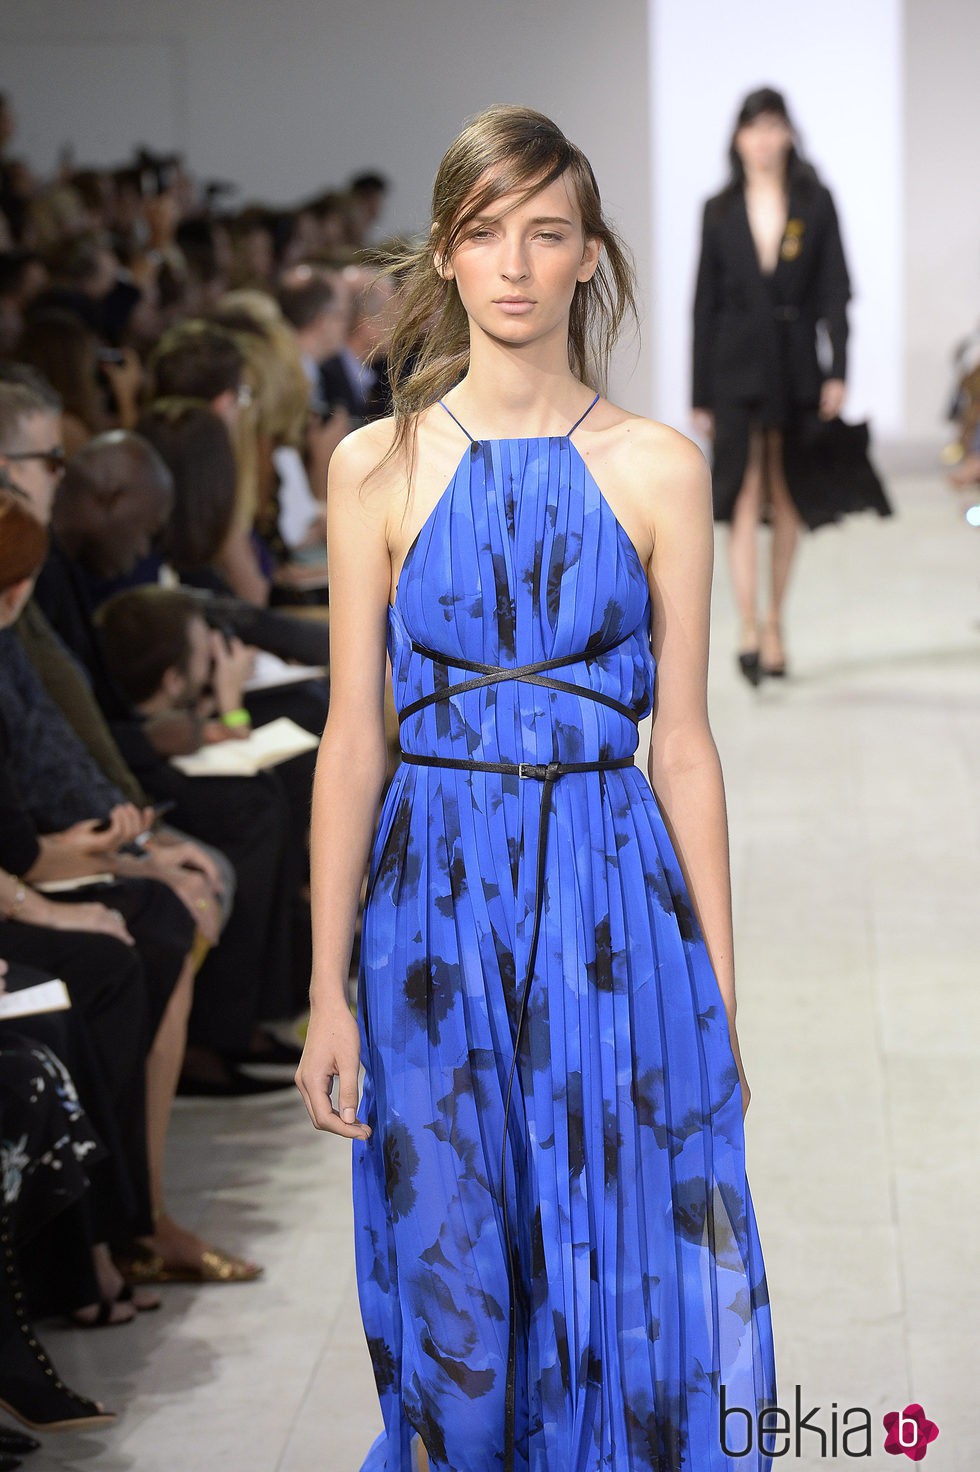 Vestido azul y negro de la colección de primavera/verano 2016 de Michael Kors en Nueva York Fashion Week